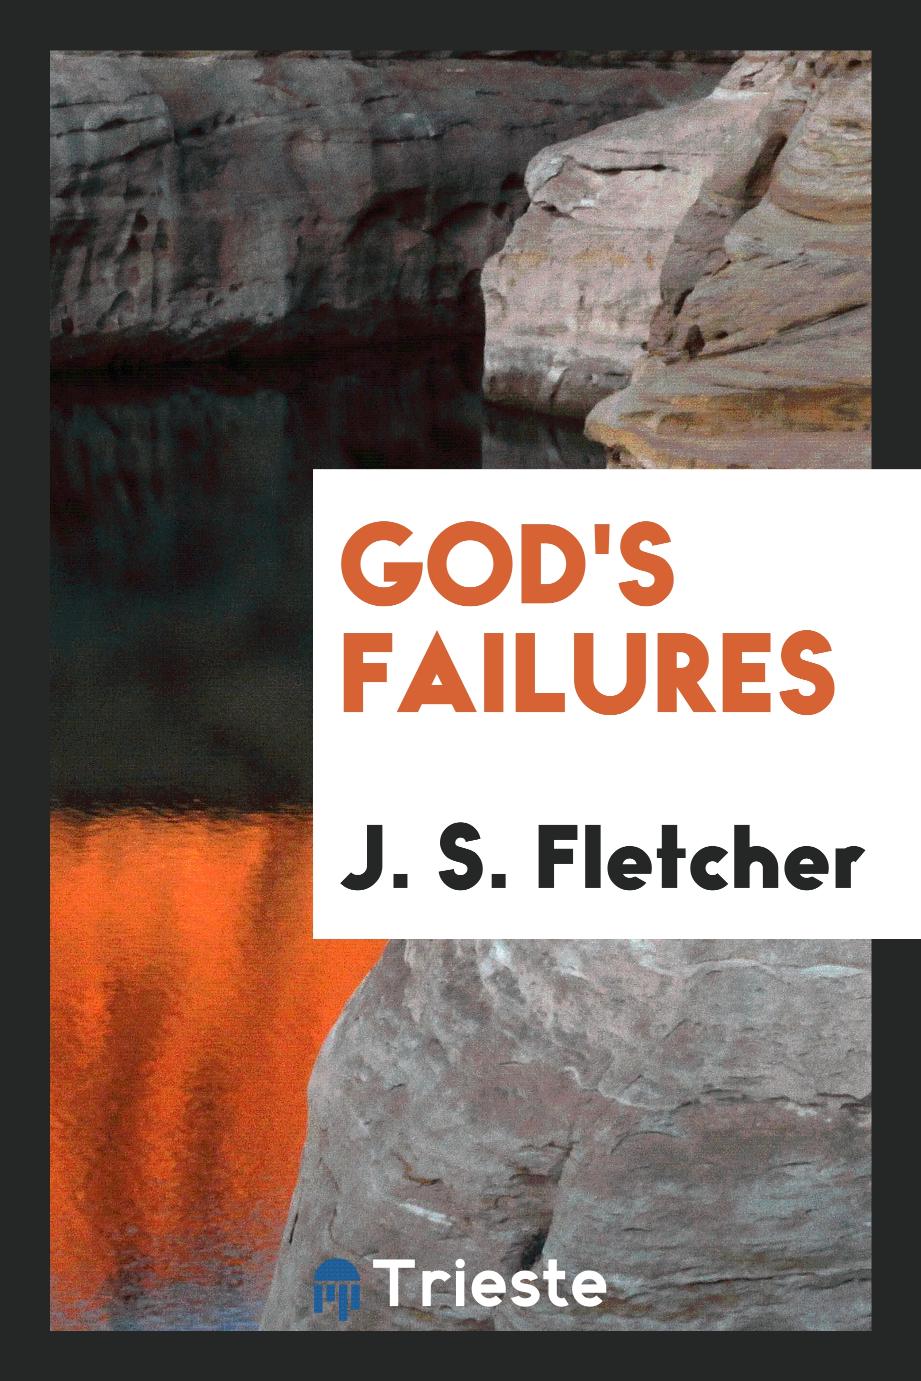 God's failures